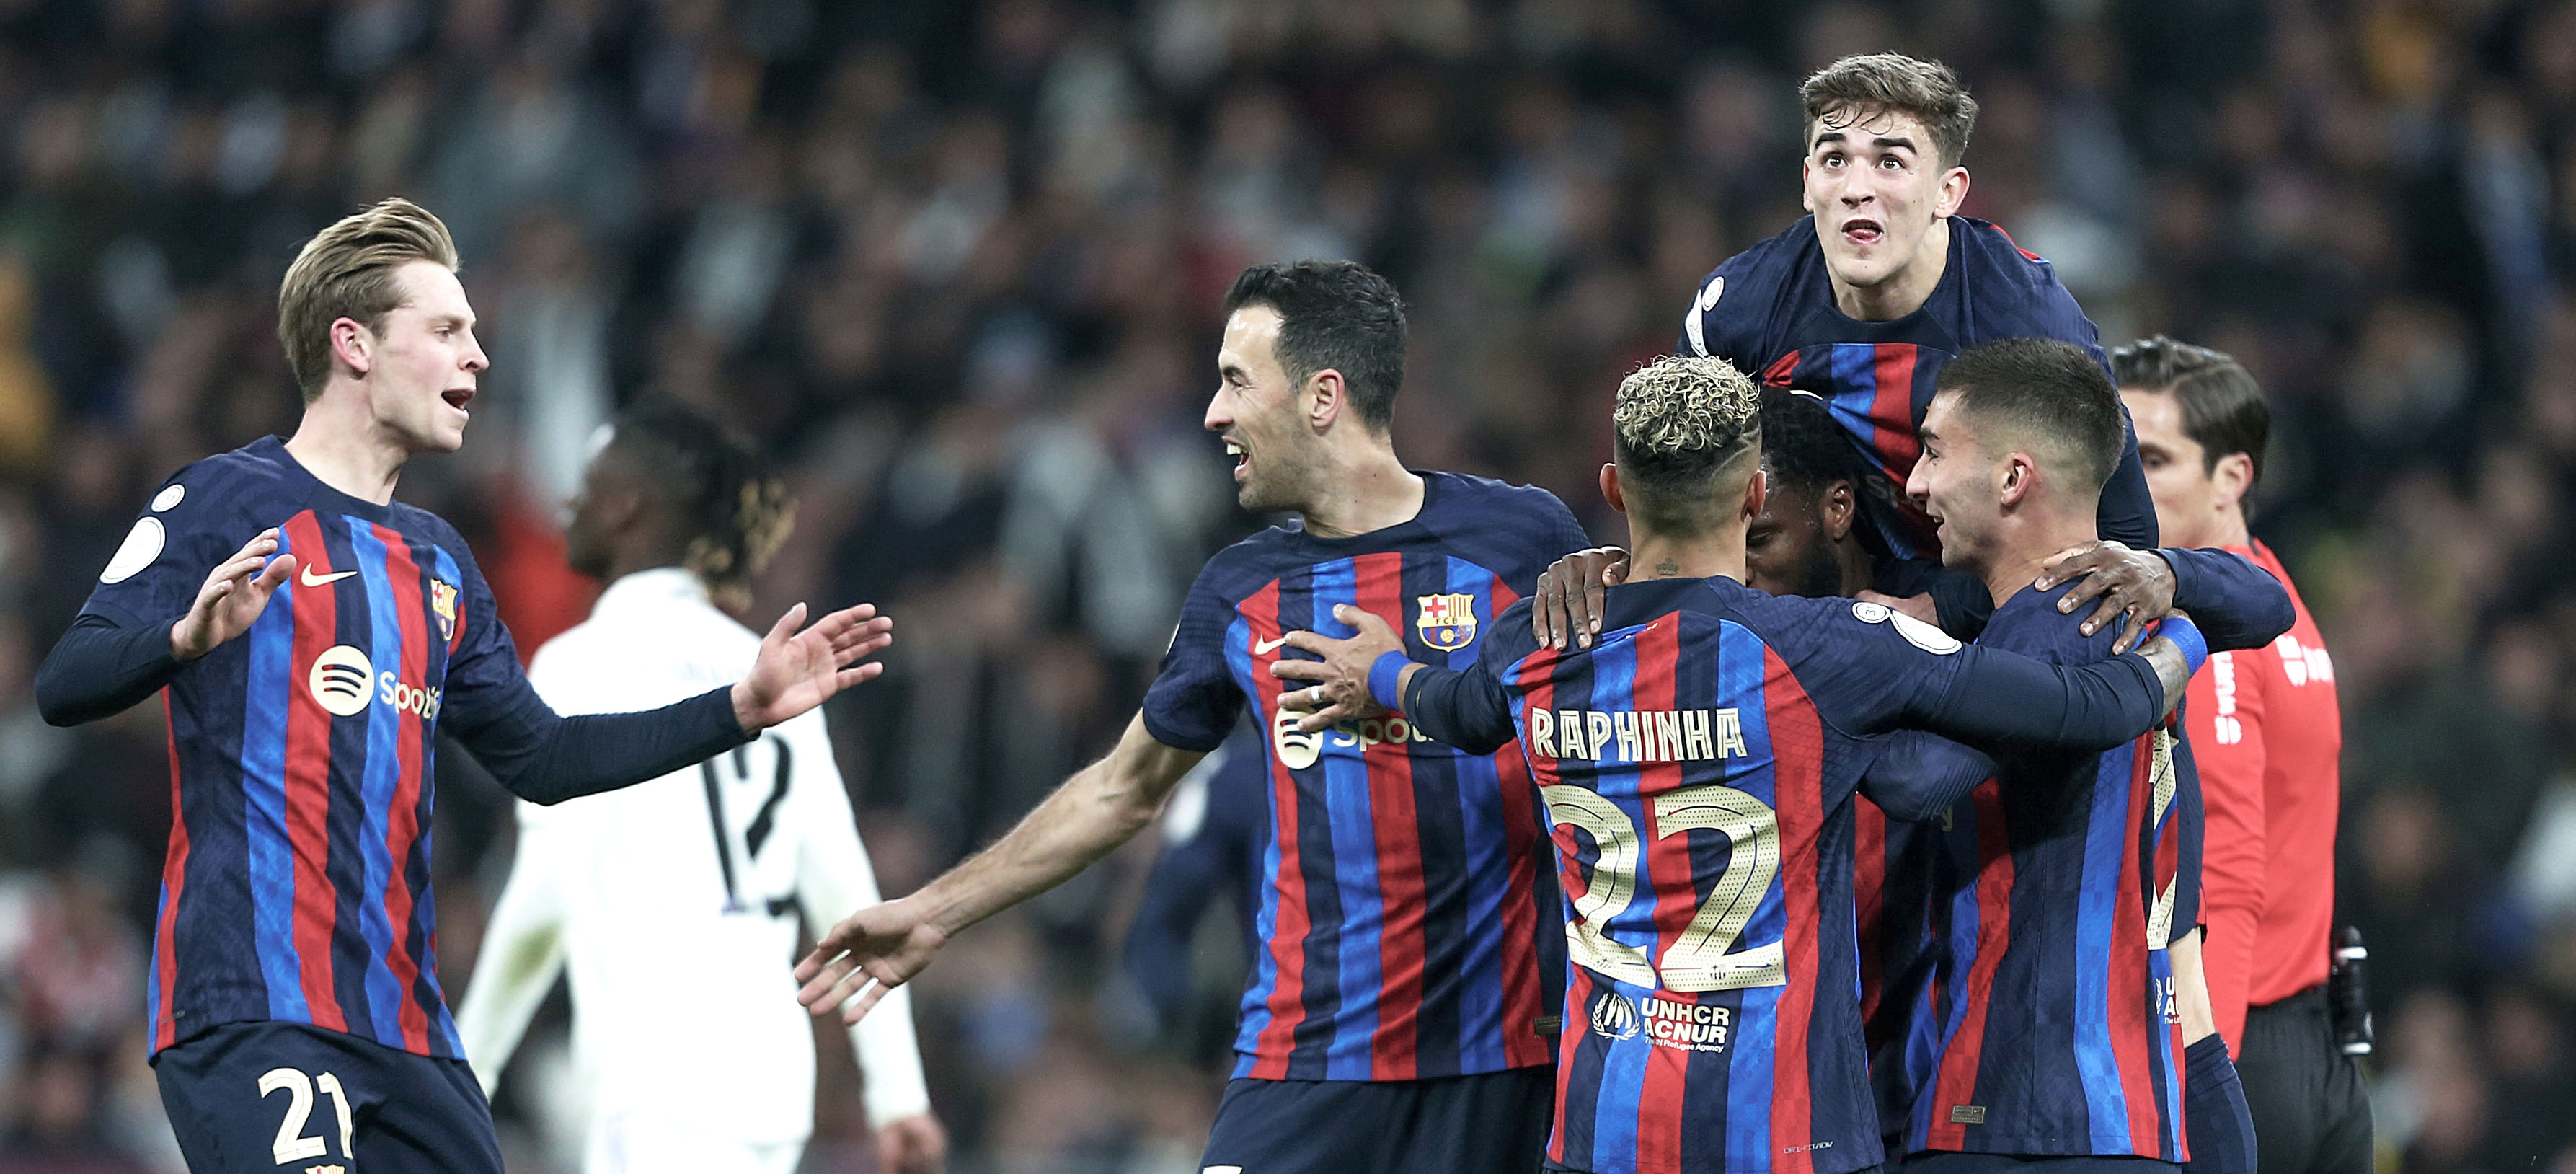 Análisis táctico Real Madrid 0 Barcelona 1: Planteamientos, correciones y cambios en el Clásico